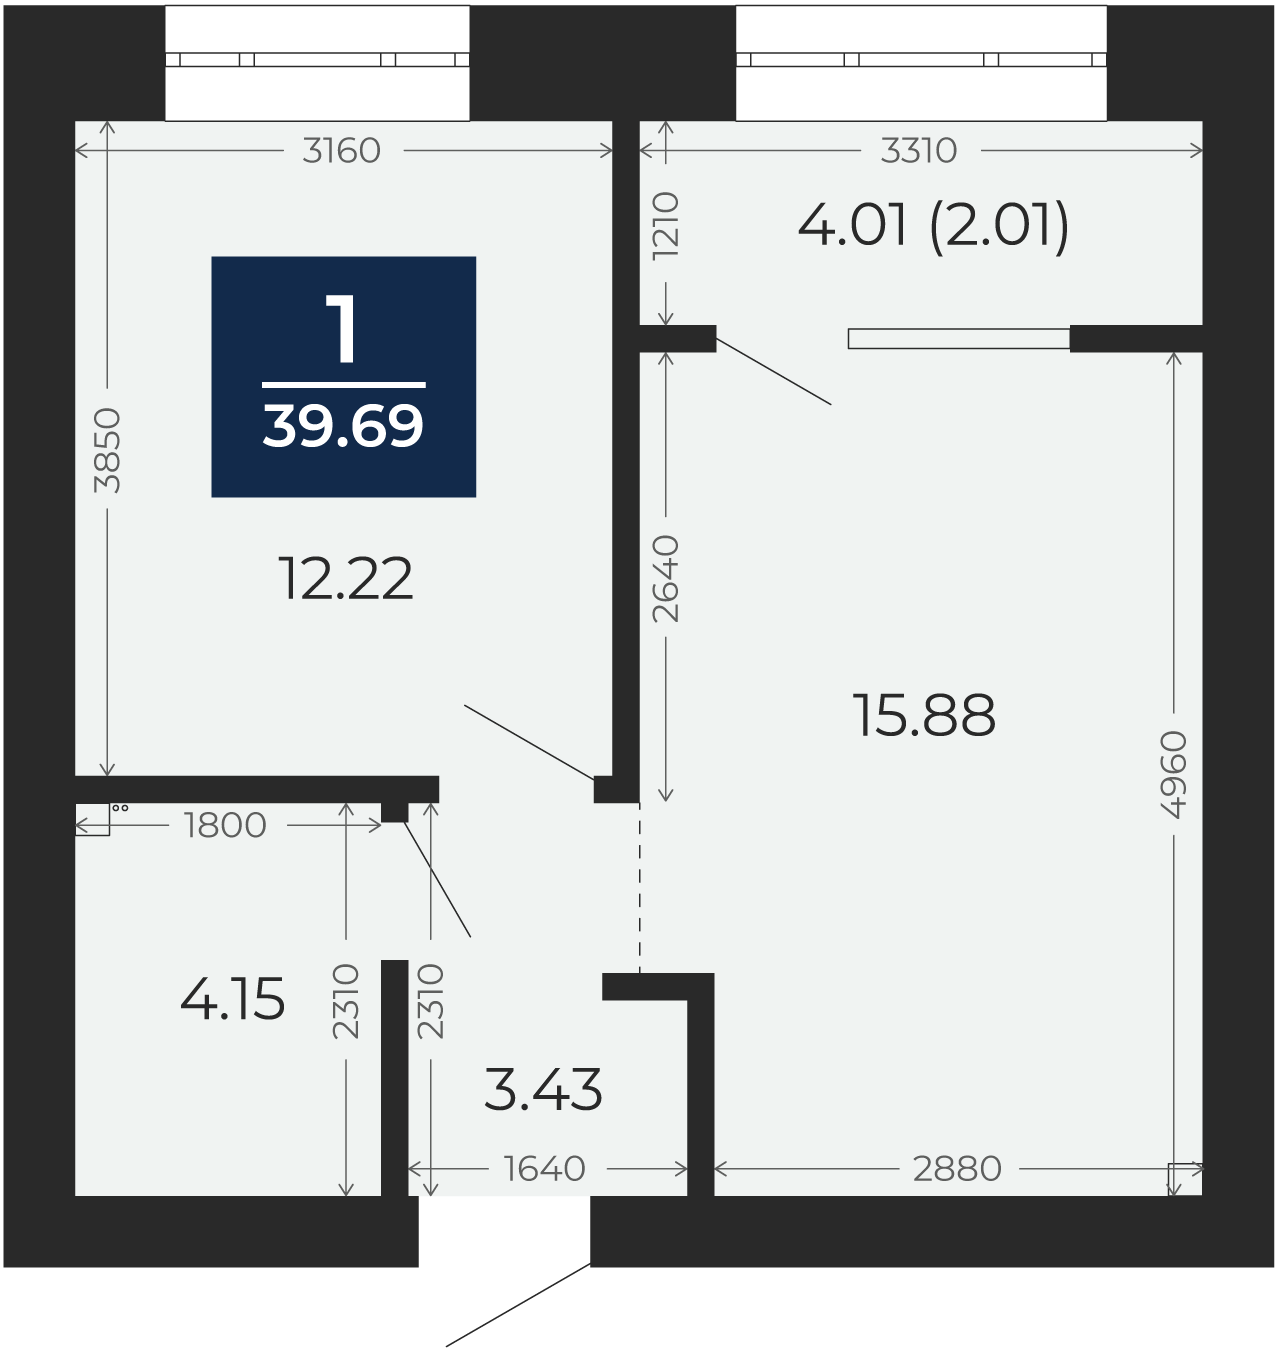 Квартира № 212, 1-комнатная, 39.69 кв. м, 4 этаж